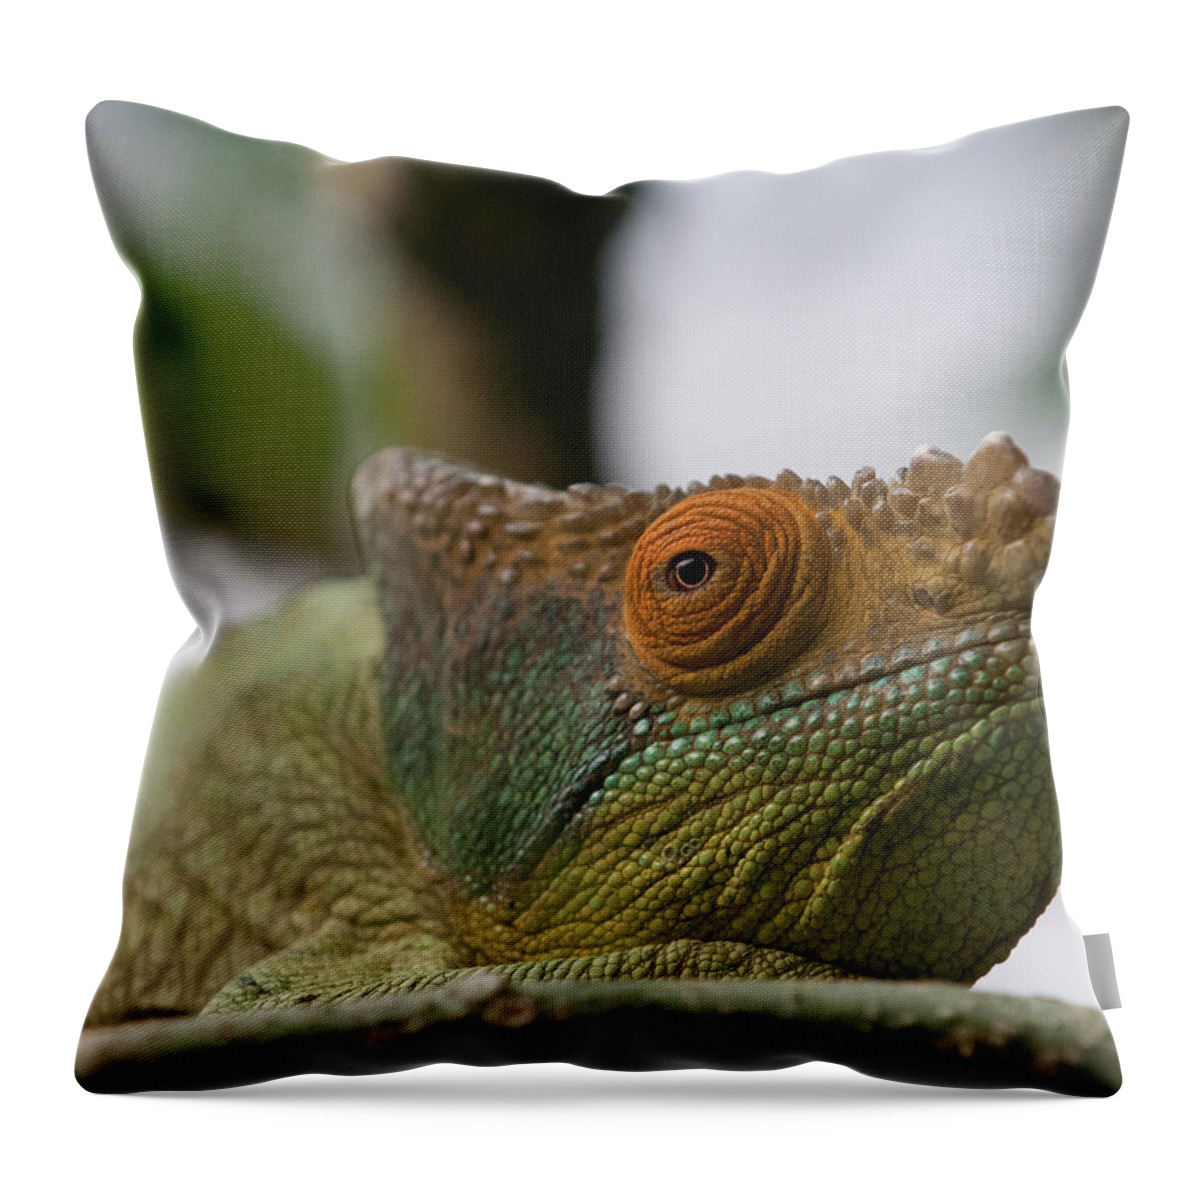 Animal Themes Throw Pillow featuring the photograph The Parsons Chameleon Calumma Parsonii by Haja Rasambainarivo